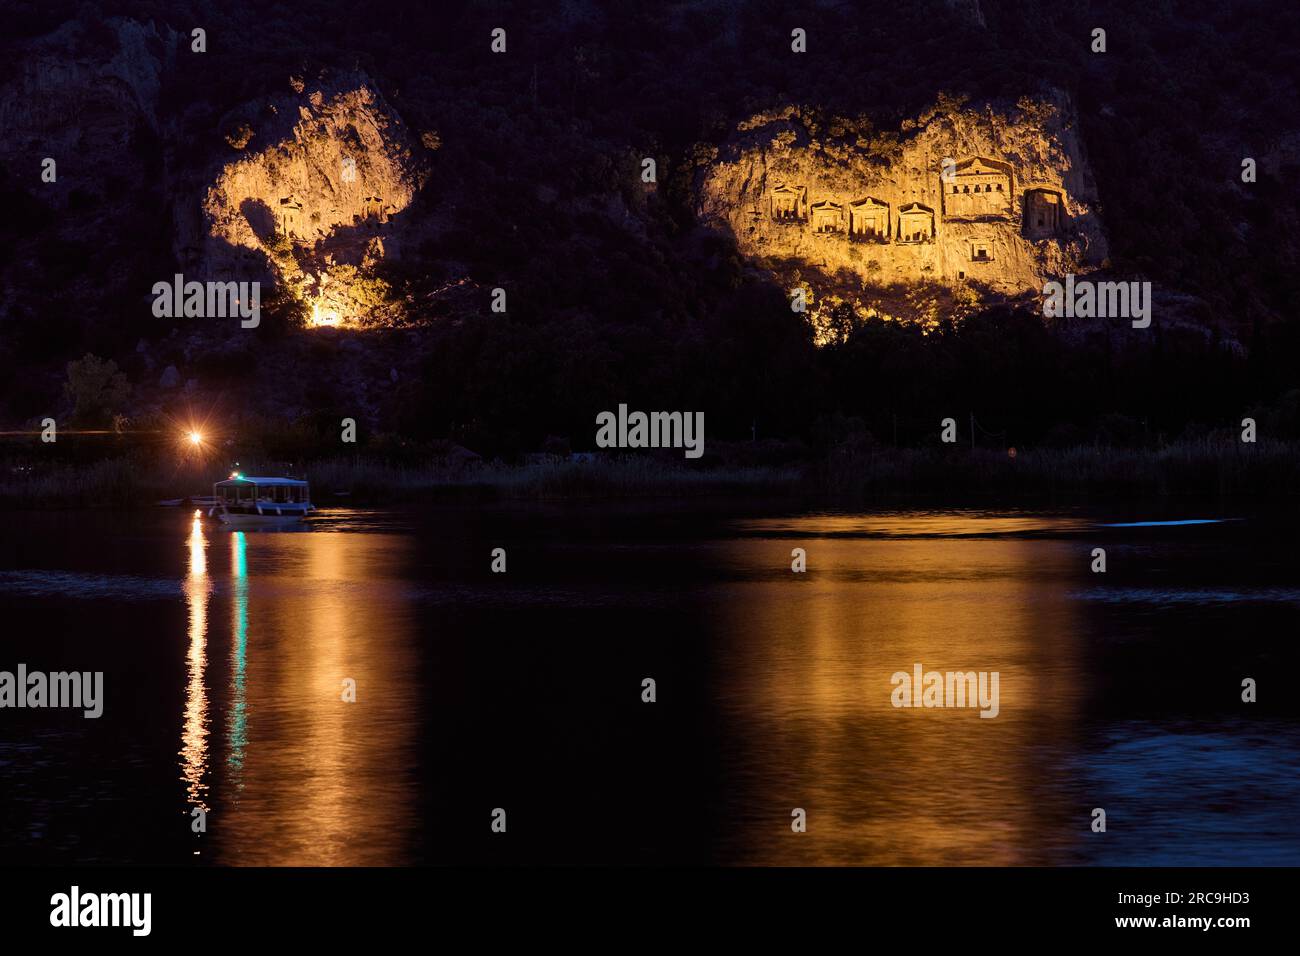 Nachtaufnahme der beleuchteten Lykische Felsengraeber in einer Felswand von Dalyan, Tuerkei |scatto notturno di tombe di roccia Licia illuminate in una roccia Foto Stock